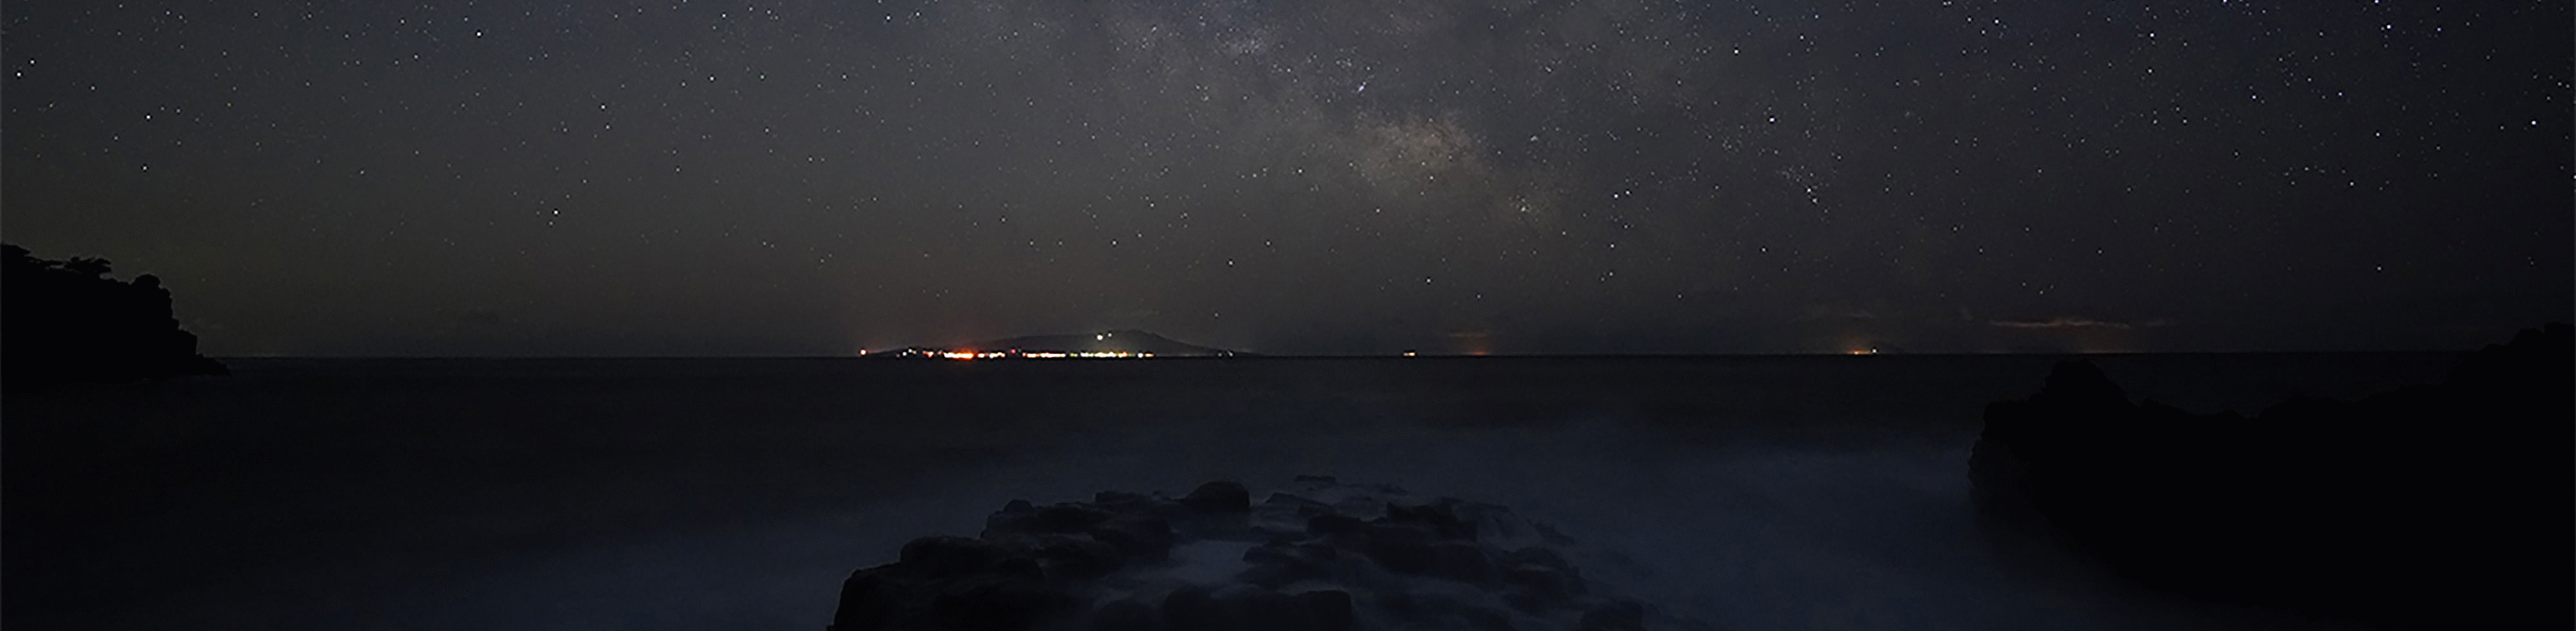 Foto van sterrenhemel boven de zee met de Melkweg